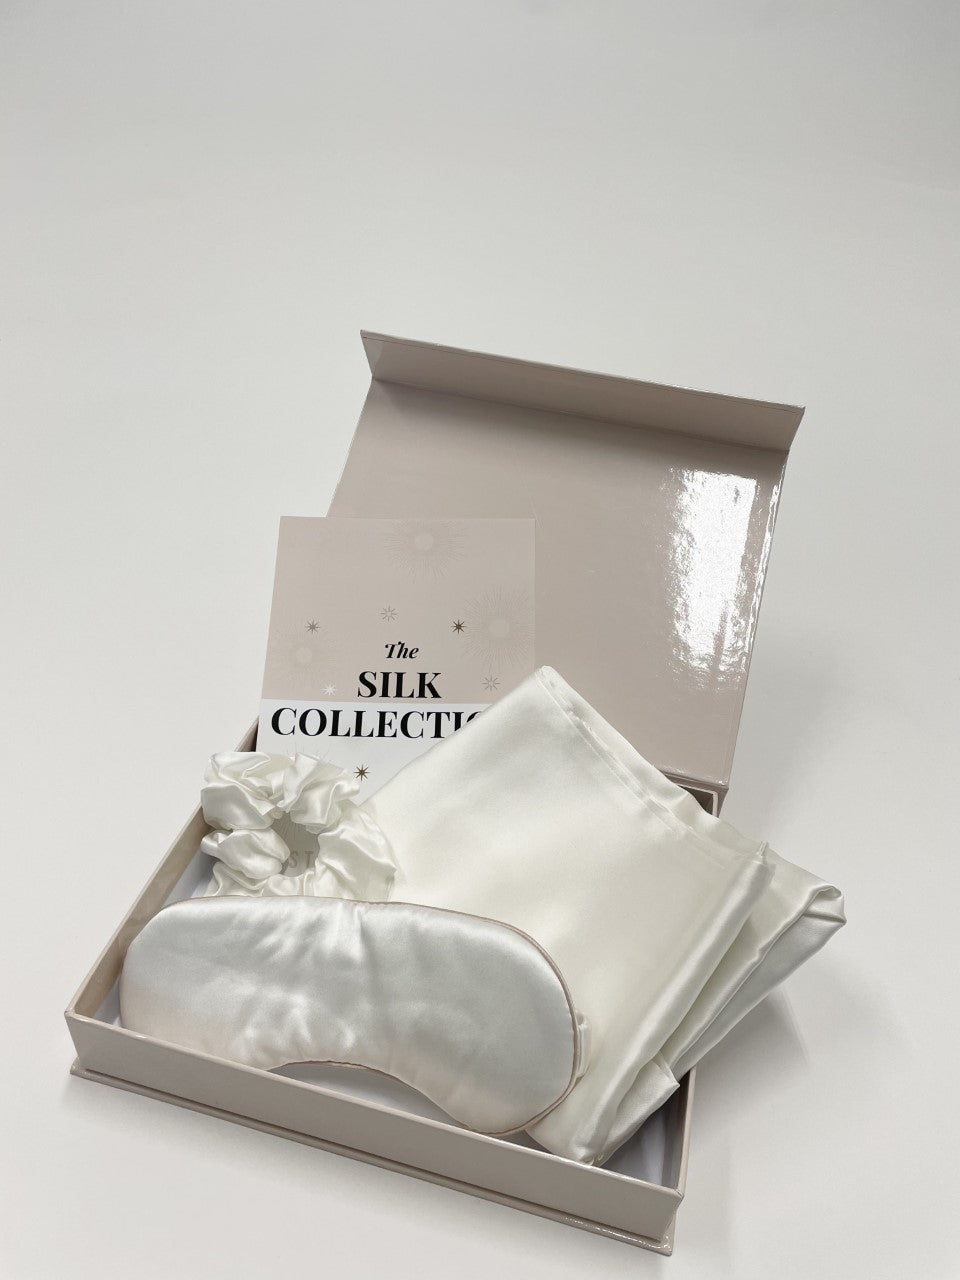 The Ultimate Christmas Silk Gift Set